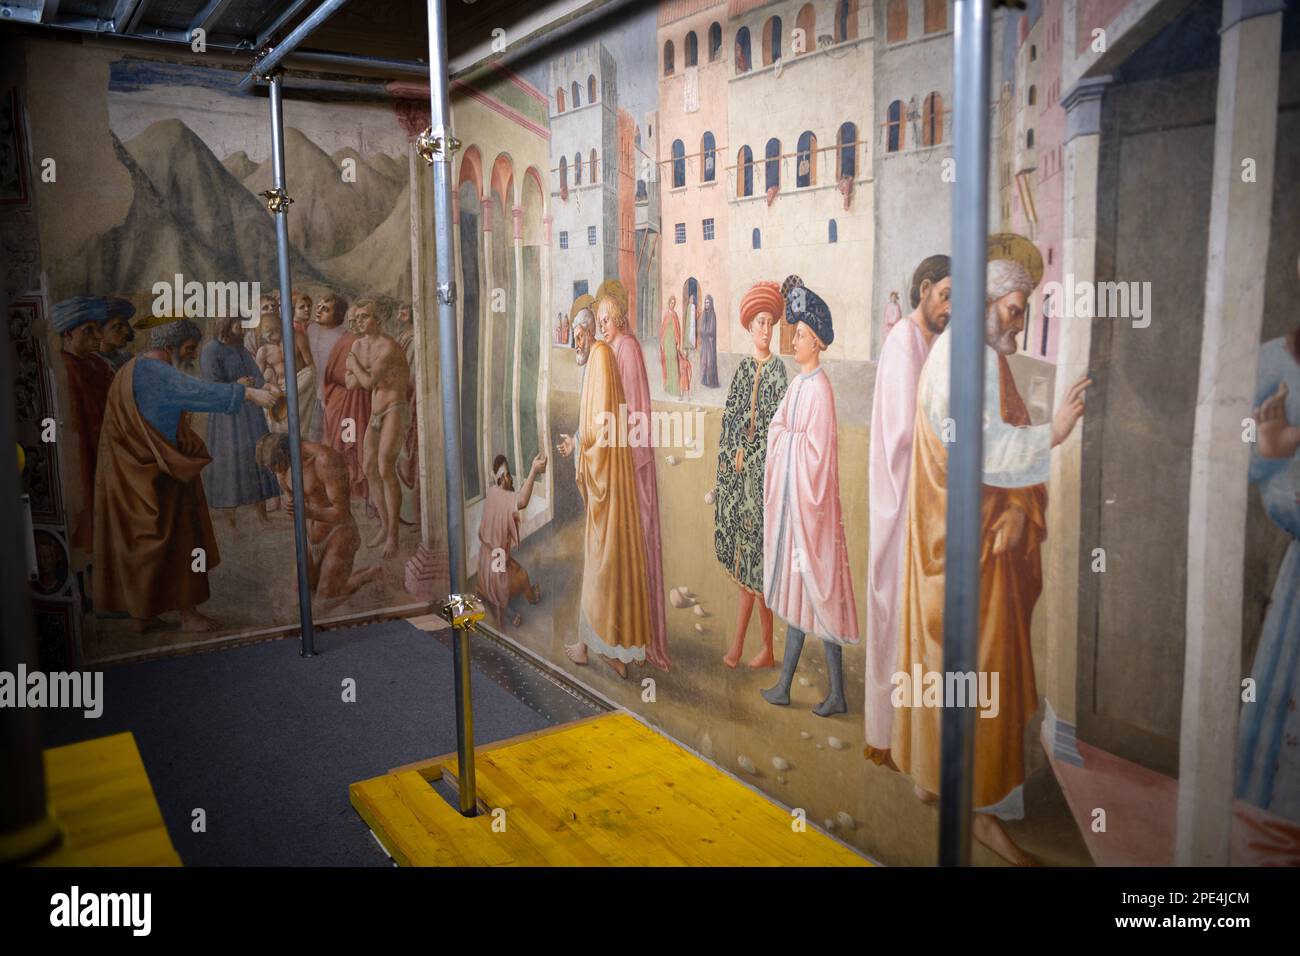 Trabajos de restauración en curso en los famosos frescos de la Capilla Branacci en Florencia. Se permiten recorridos limitados por poco tiempo en medio de los andamios Foto de stock